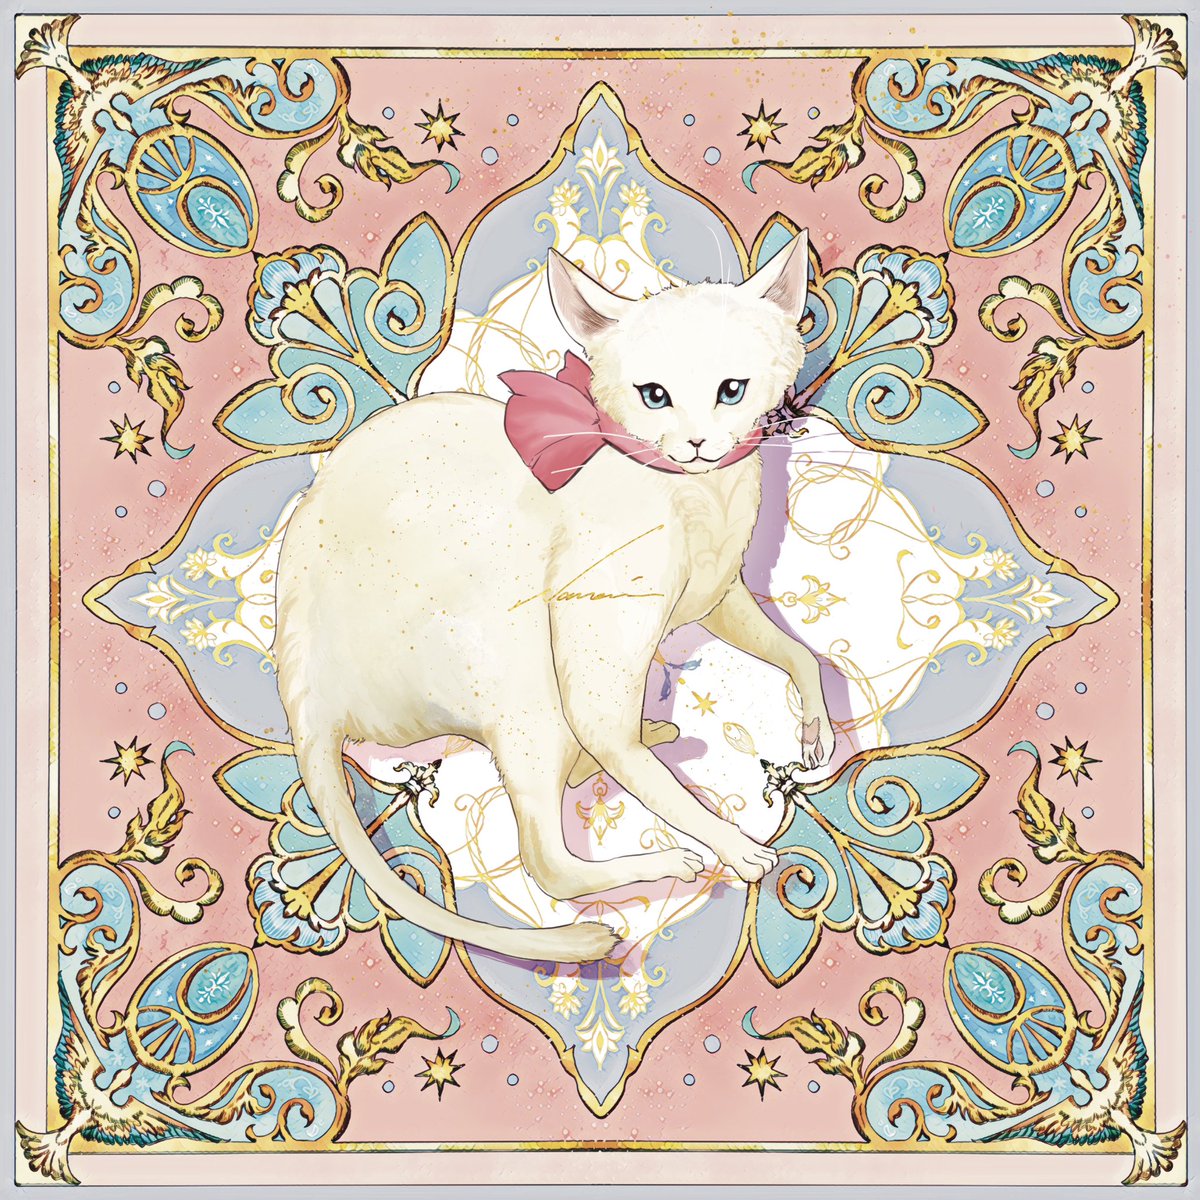 「#猫の日 」|Nanami @ デザフェス両日 B31、32のイラスト